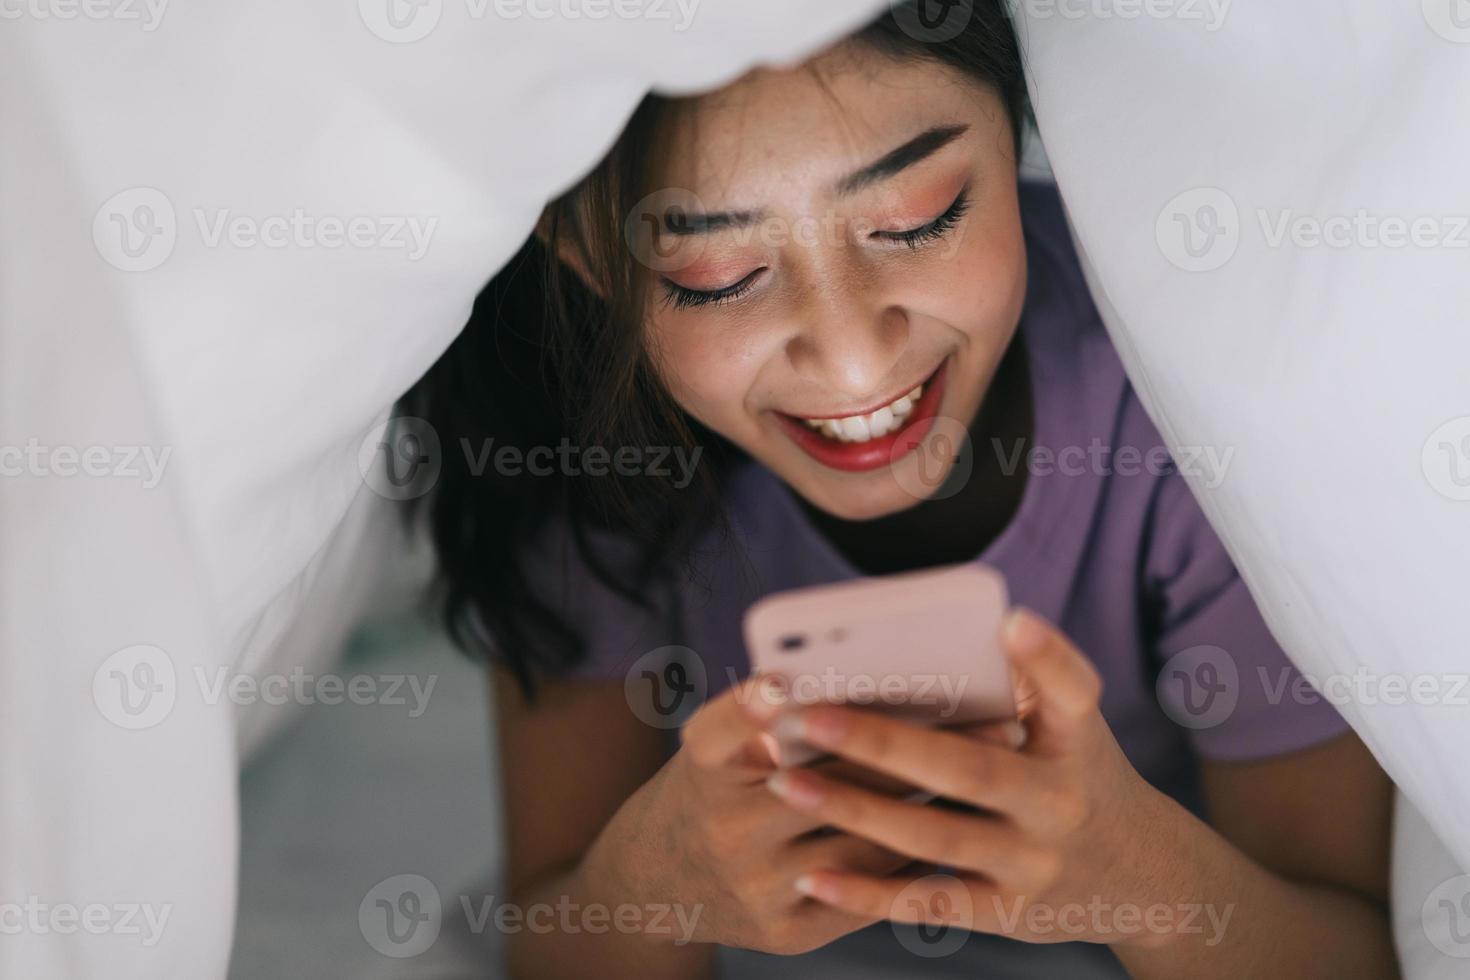 jong Aziatisch meisje dat in deken ligt en haar telefoon gebruikt om te sms'en met vrienden op sociale netwerken foto